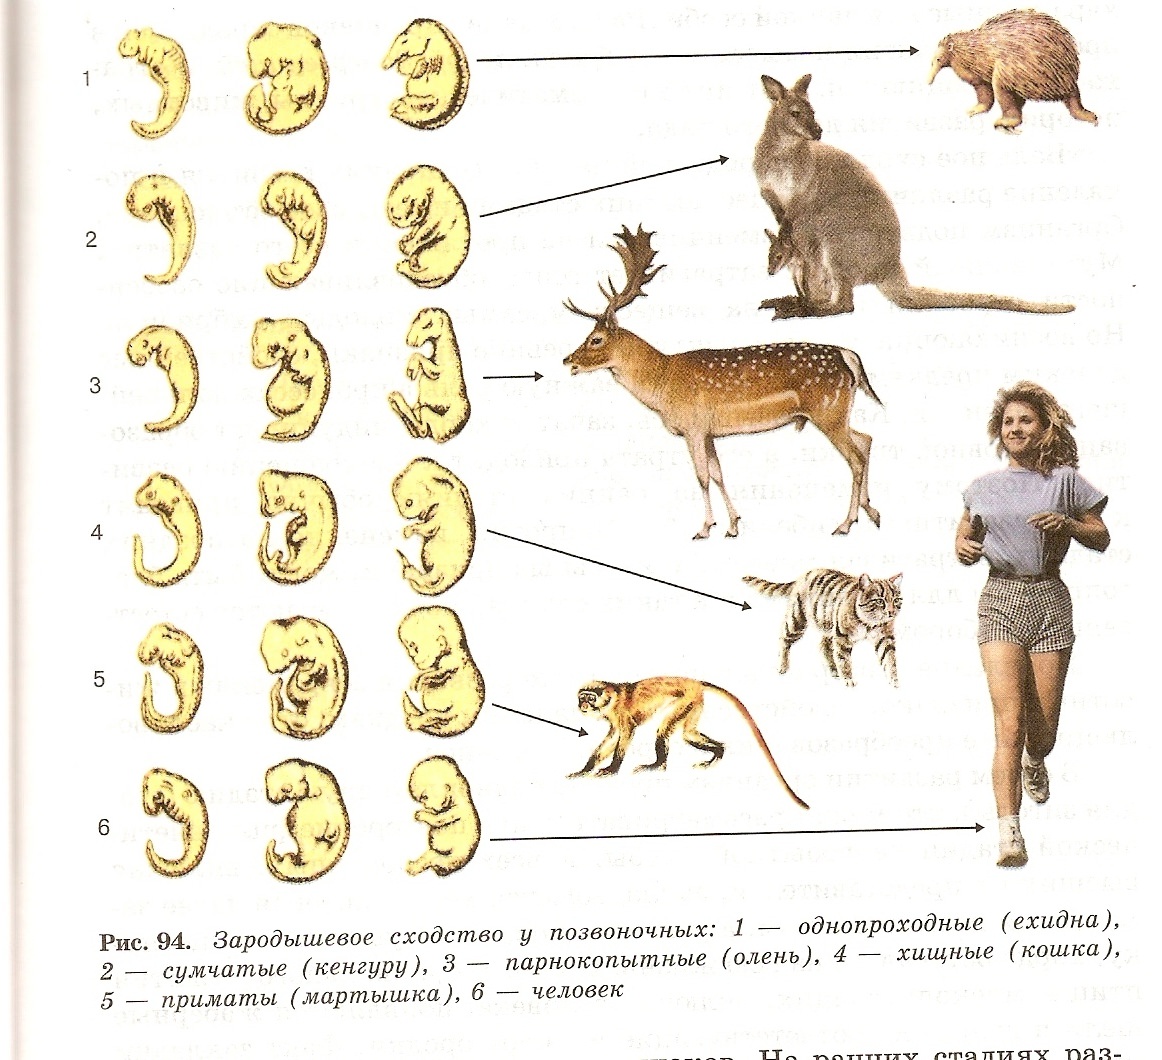 Сходство филогенеза и онтогенеза. Стадии зародышевого развития животных. Стадии развития зародыша позвоночных животных. Стадии зародышевого развития млекопитающих. Онтогенез млекопитающих схема.